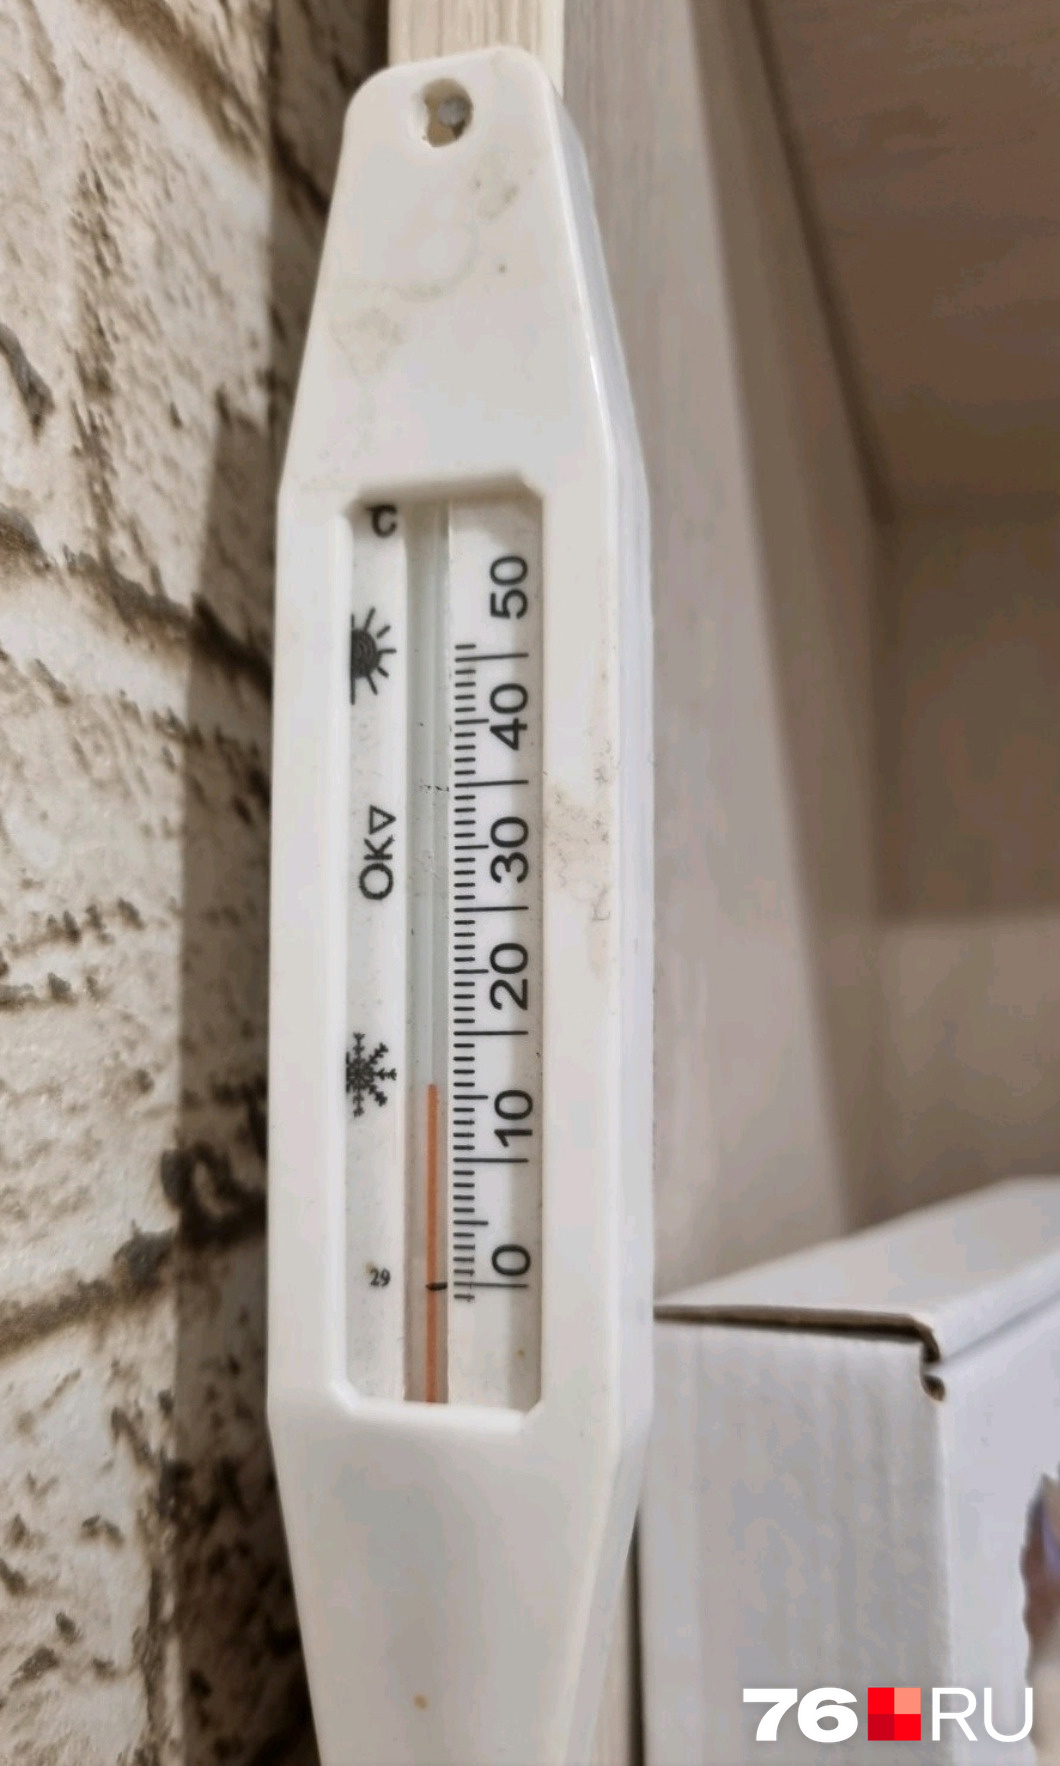 Температура воздуха в квартирах опустилась до <nobr class="_">11 градусов</nobr>